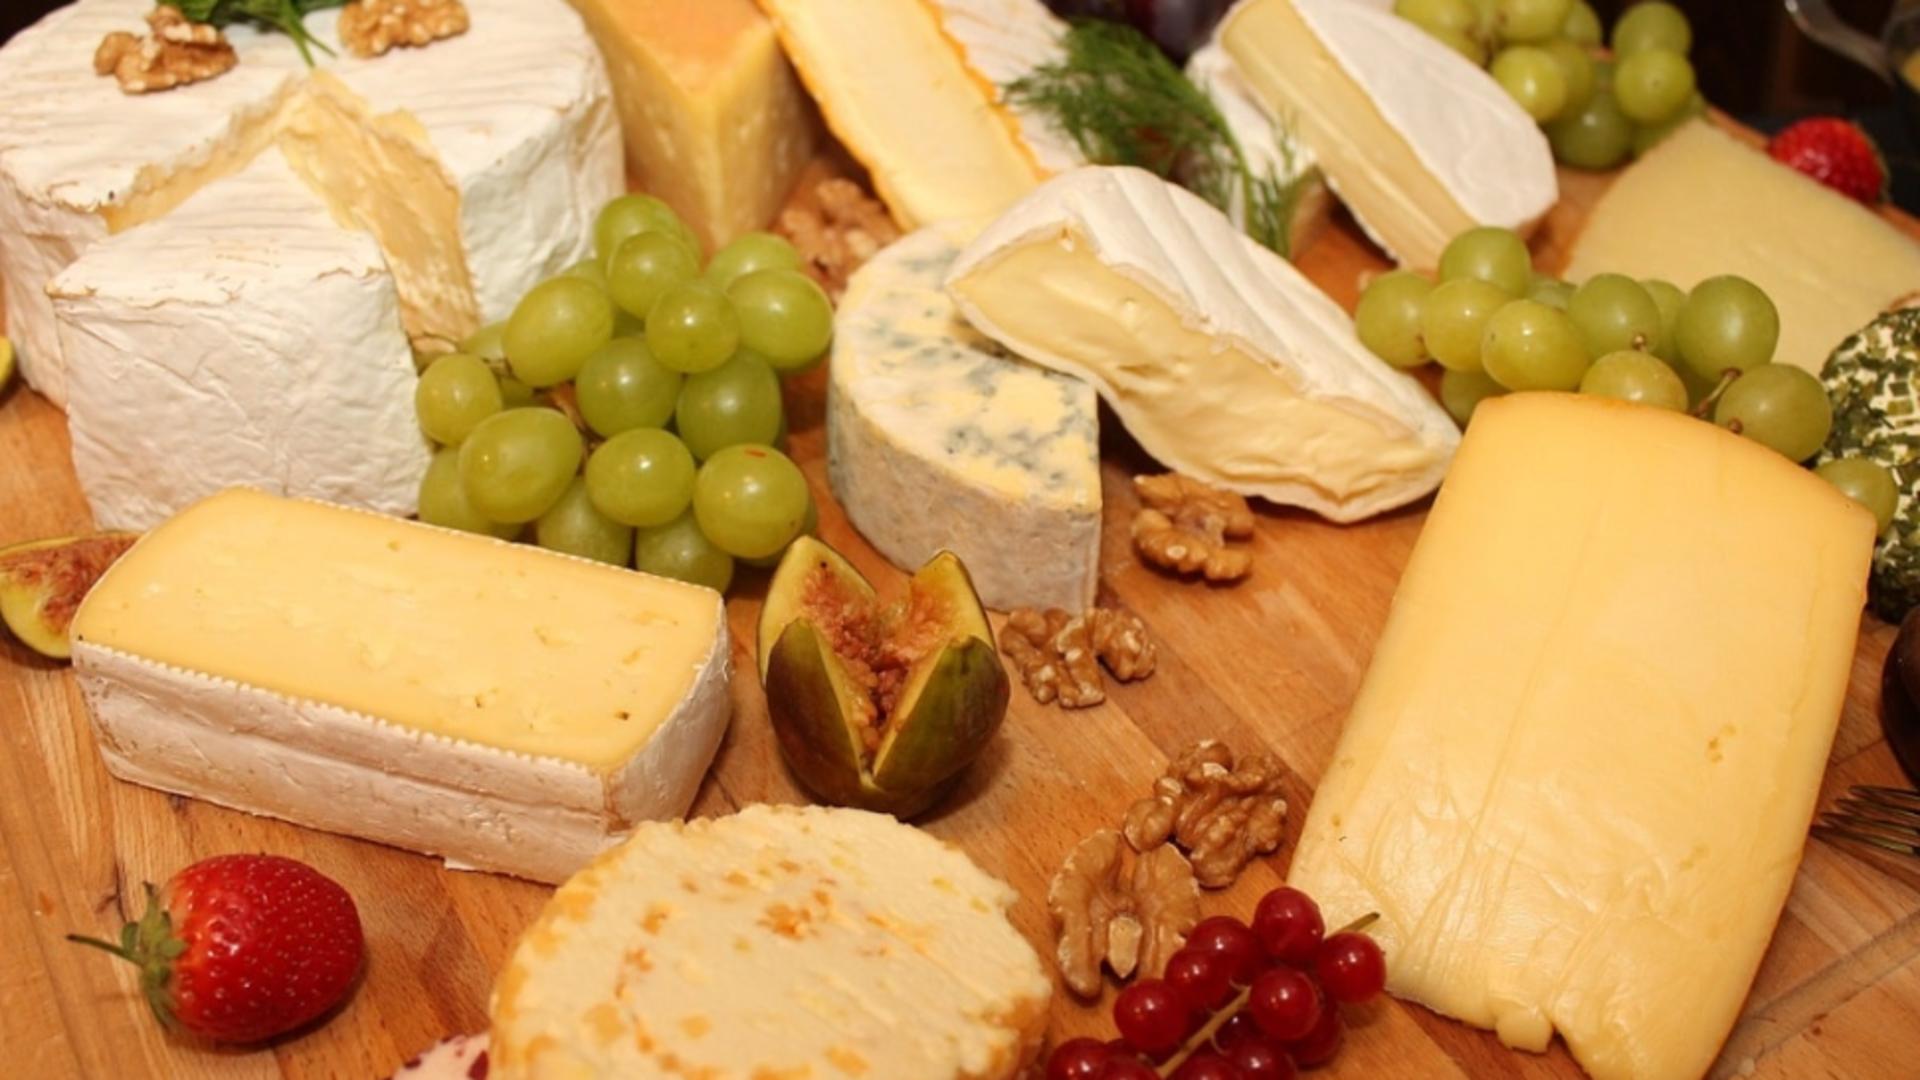 Brânza sau cașcavalul? Care aliment e mai gras și ce pericole prezintă pentru sănătate